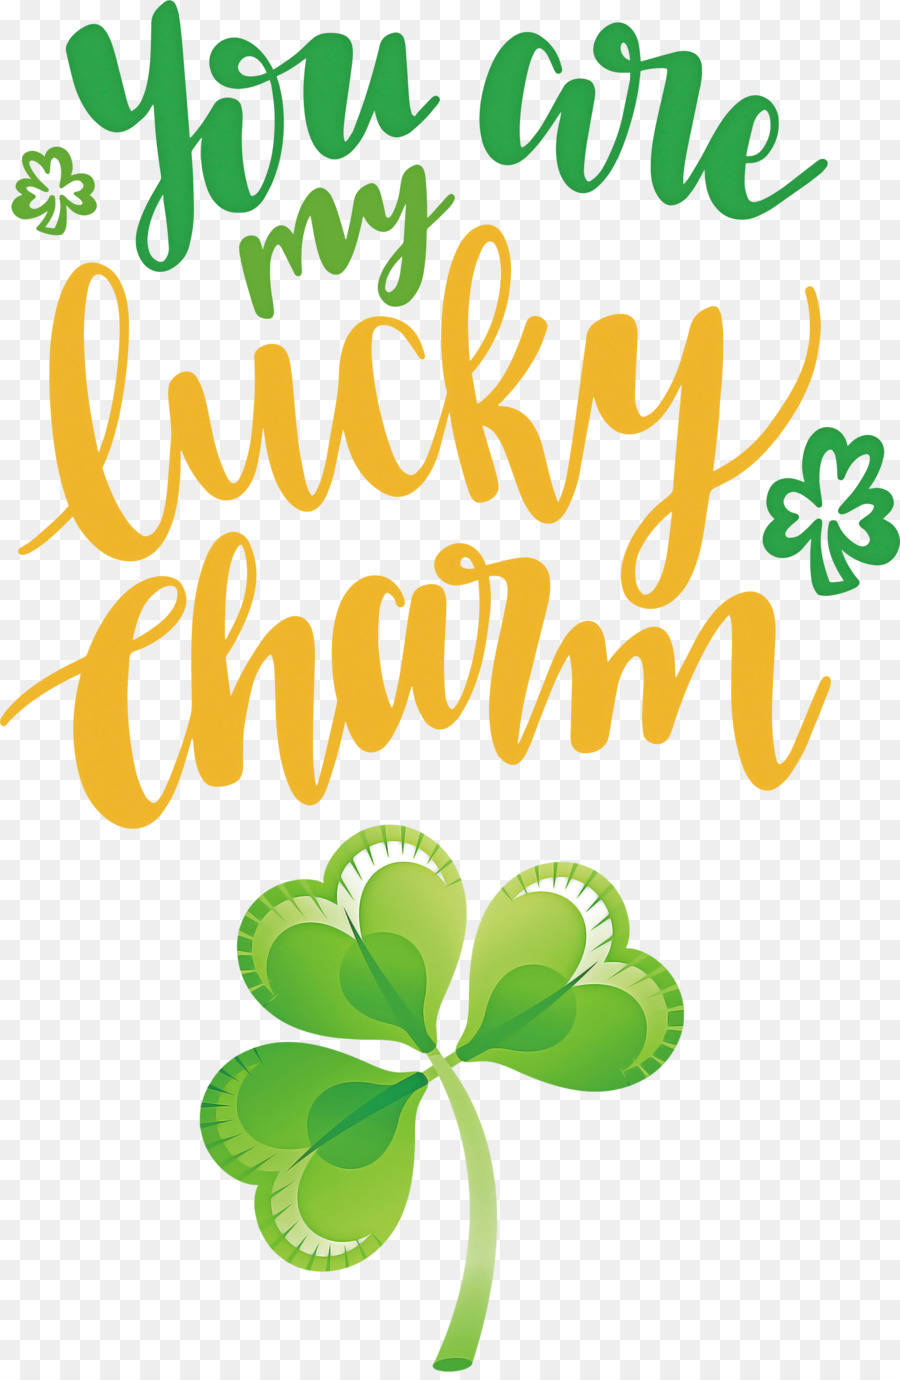 You Are My Lucky Charm Ngày thánh Patrick - 